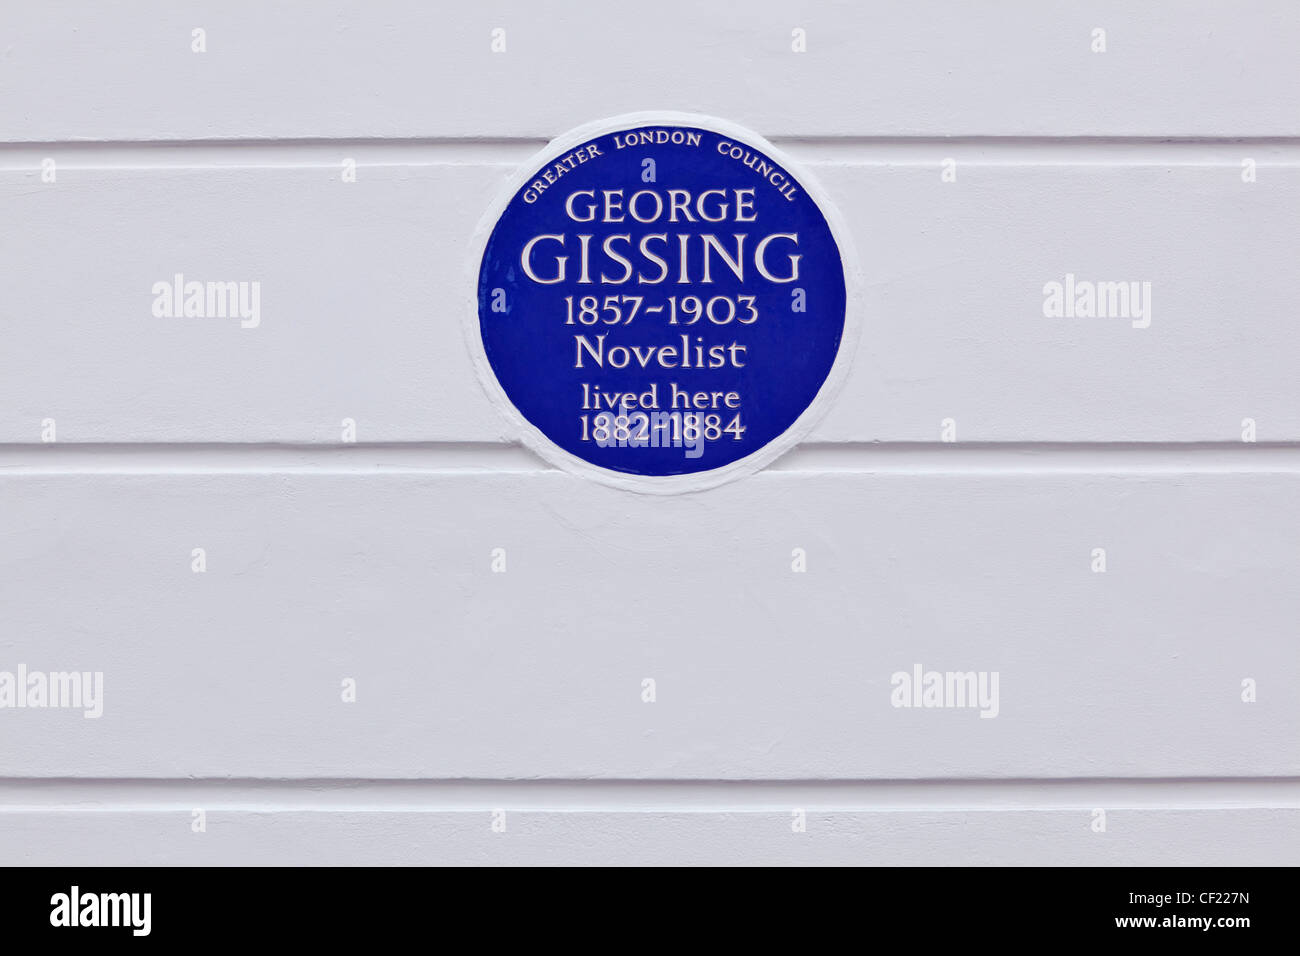 Eine größere London Council (GLC) Tafel an der Wand 33 Oakley Gärten feiern, dass Schriftsteller George Gissing lebte in der hou Stockfoto